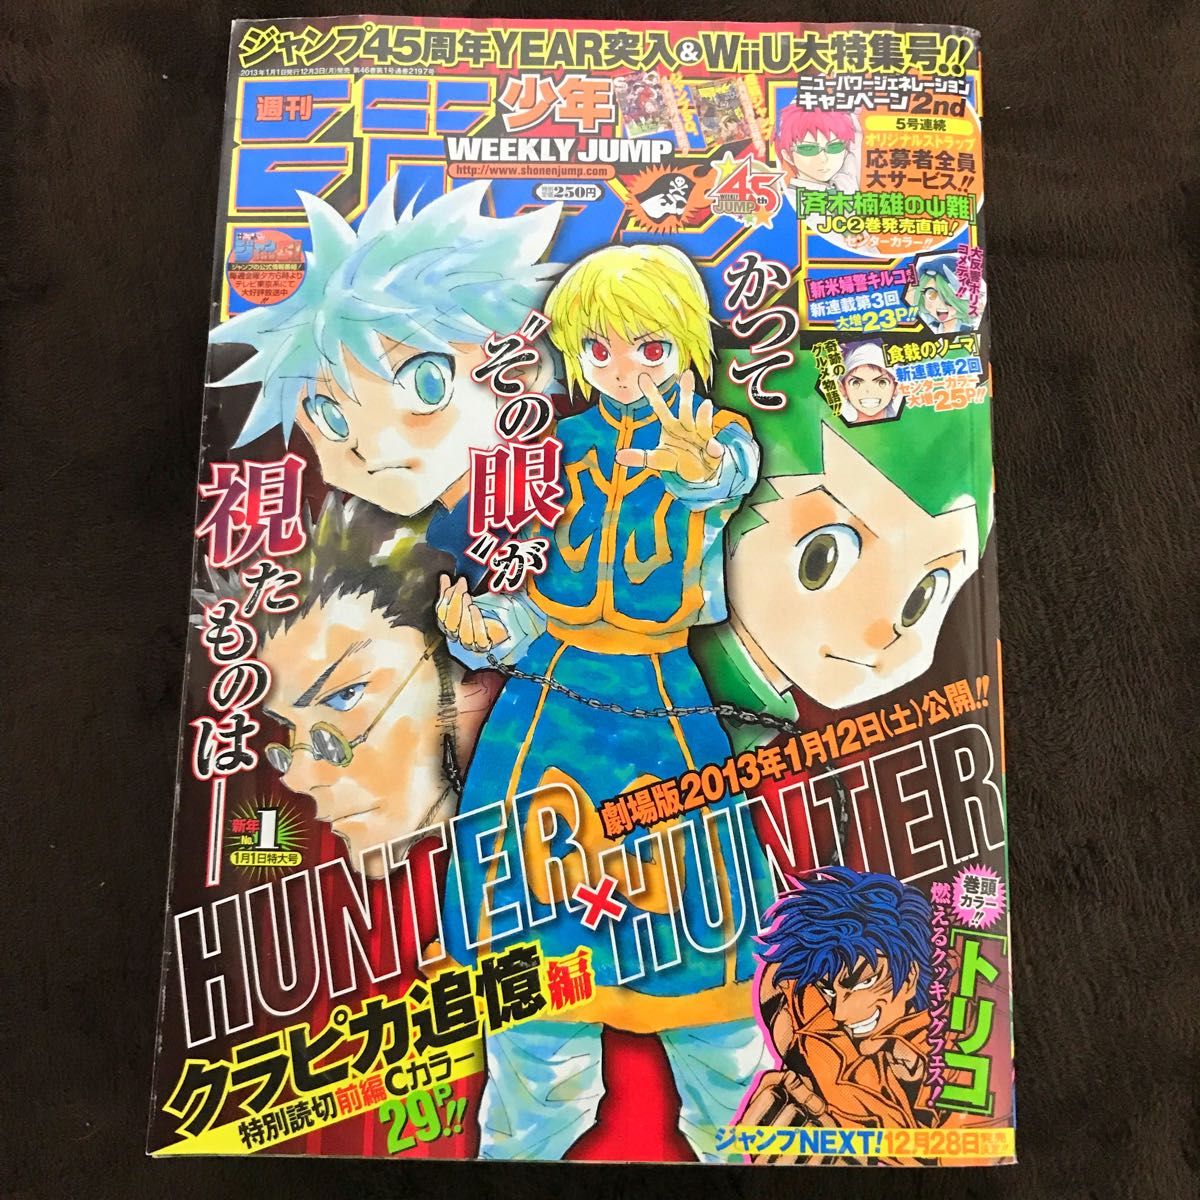 週刊少年ジャンプ 1998年14号 HUNTER×HUNTER 新連載 ハンターハンター